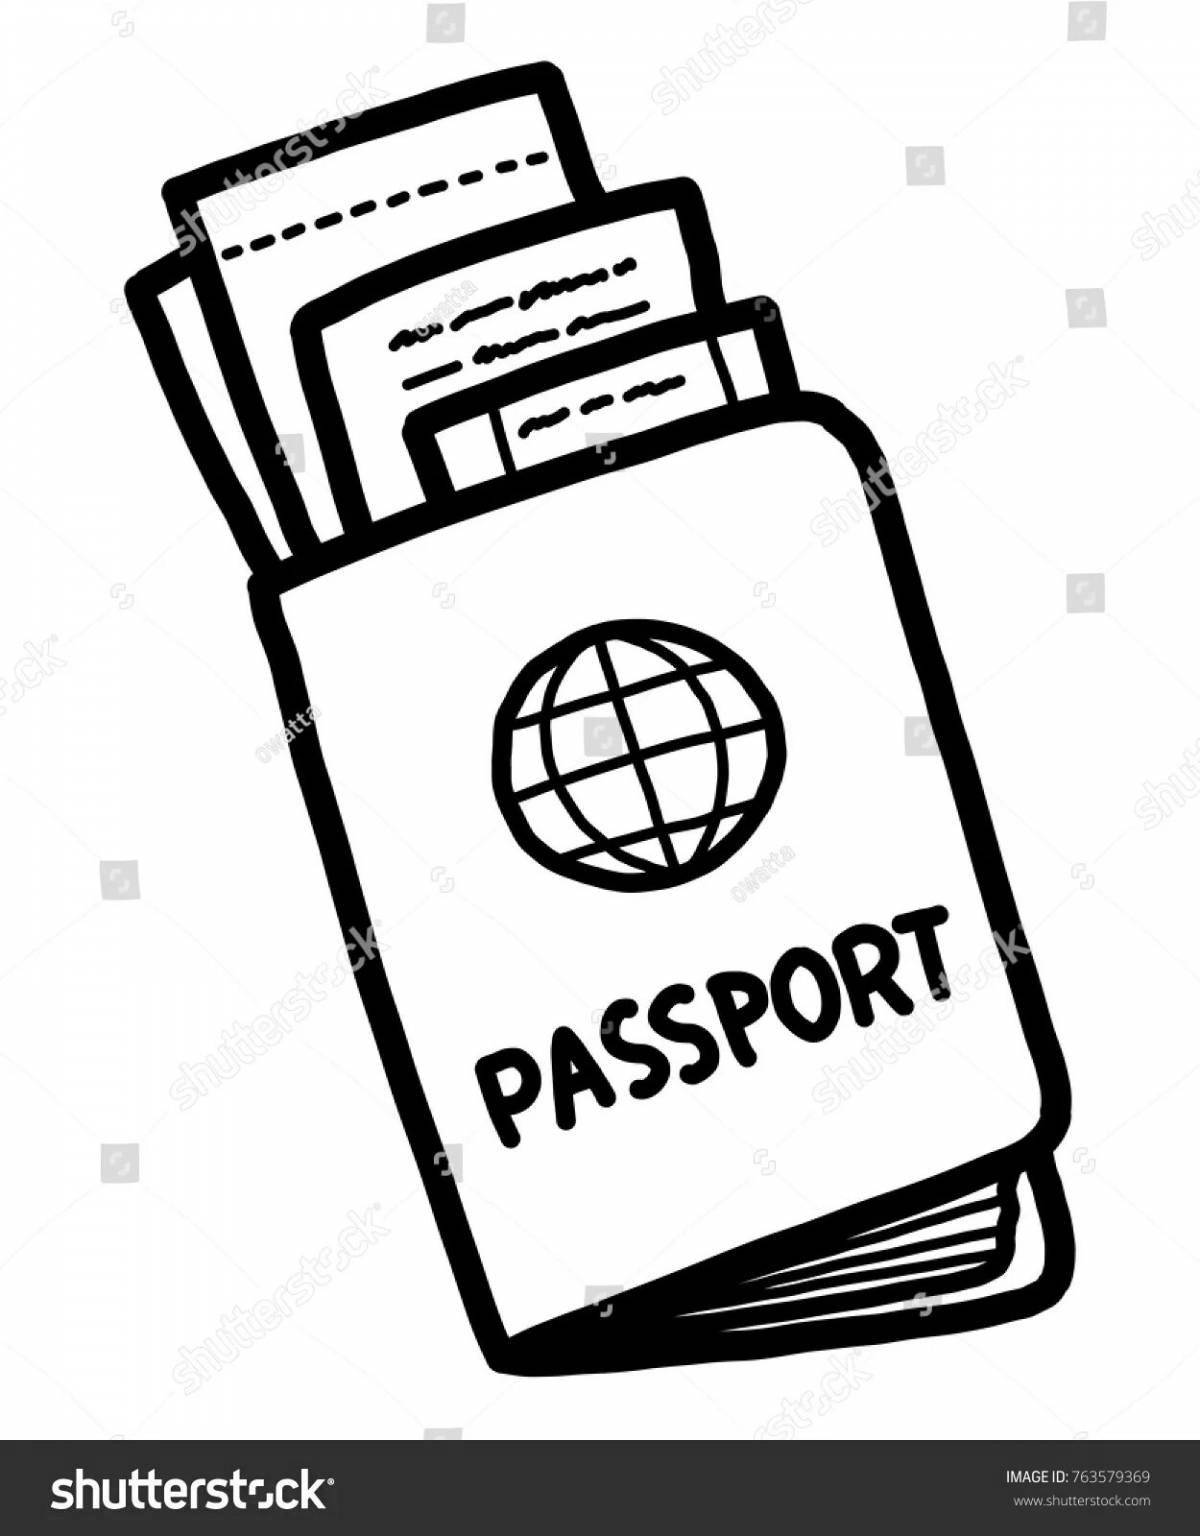 Привлекательная раскраска паспорта для молодежи